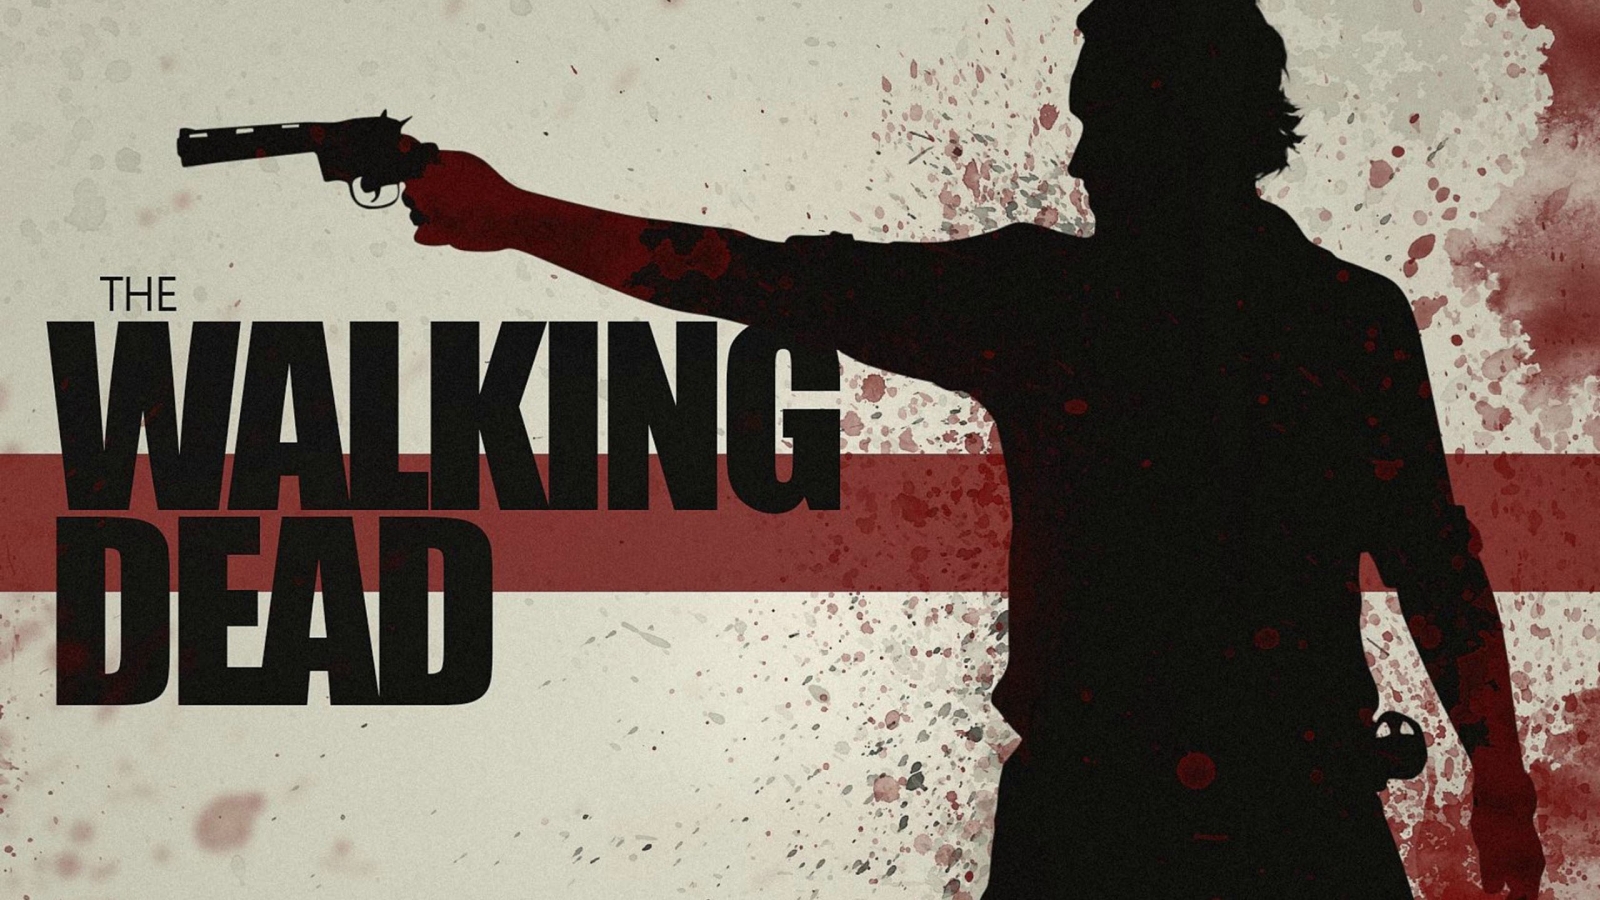 The Walking Dead Gun Poster for 1600 x 900 HDTV resolution